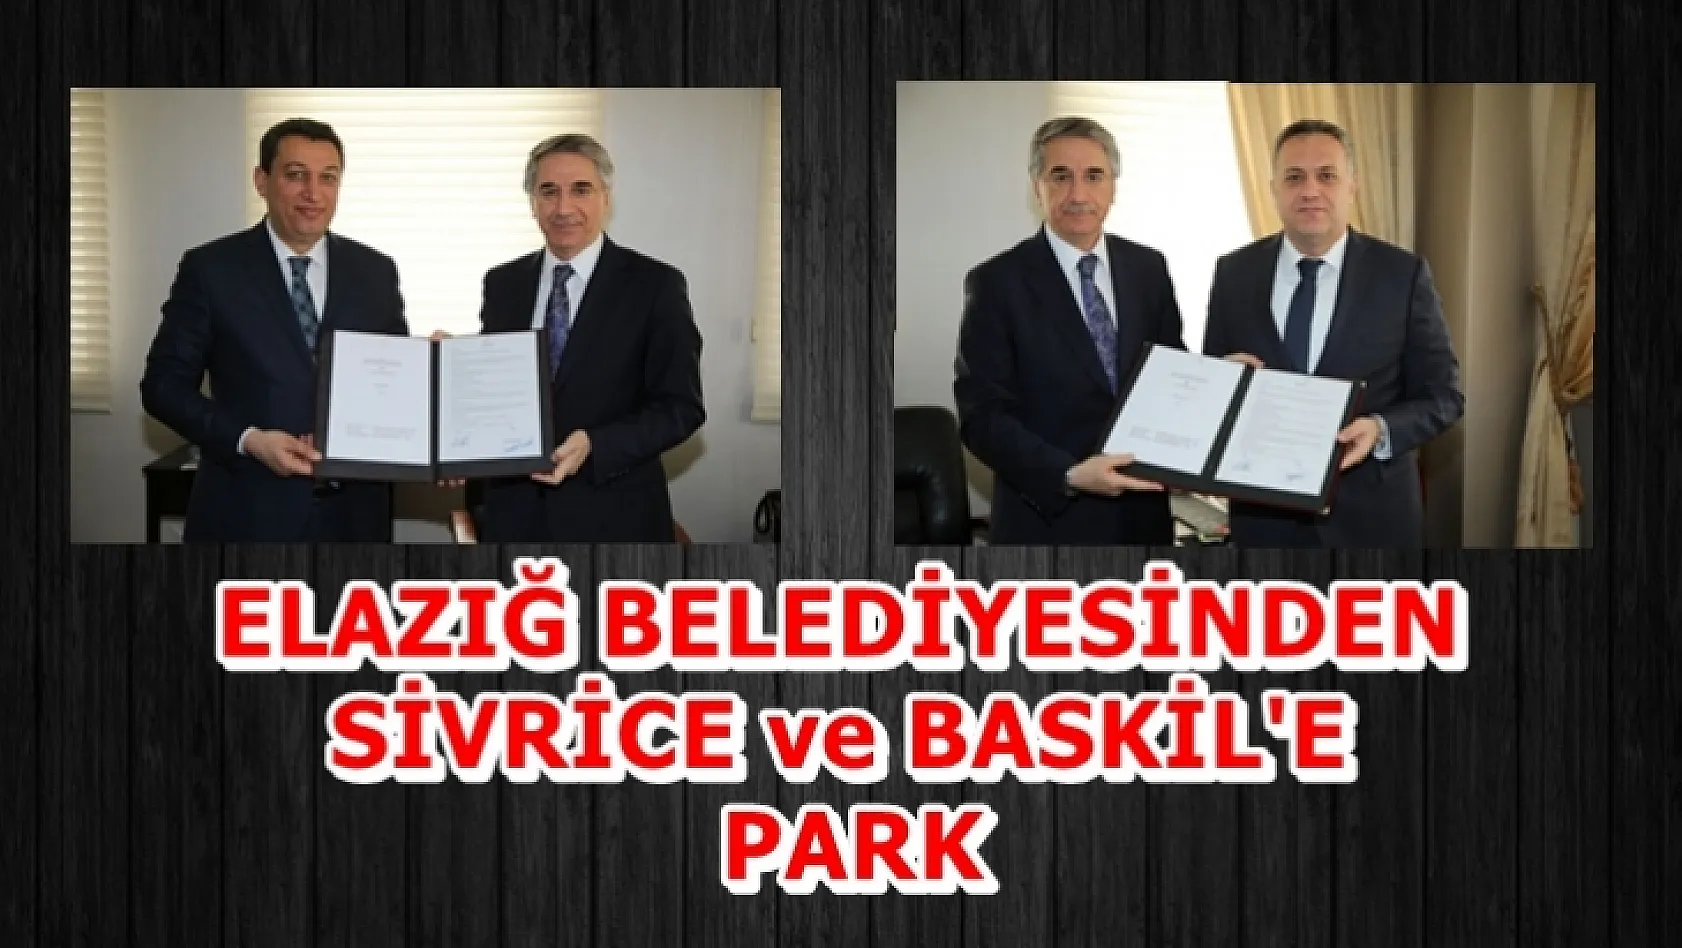 Elazığ Belediyesi'den Sivrice ve Baskil'e Park